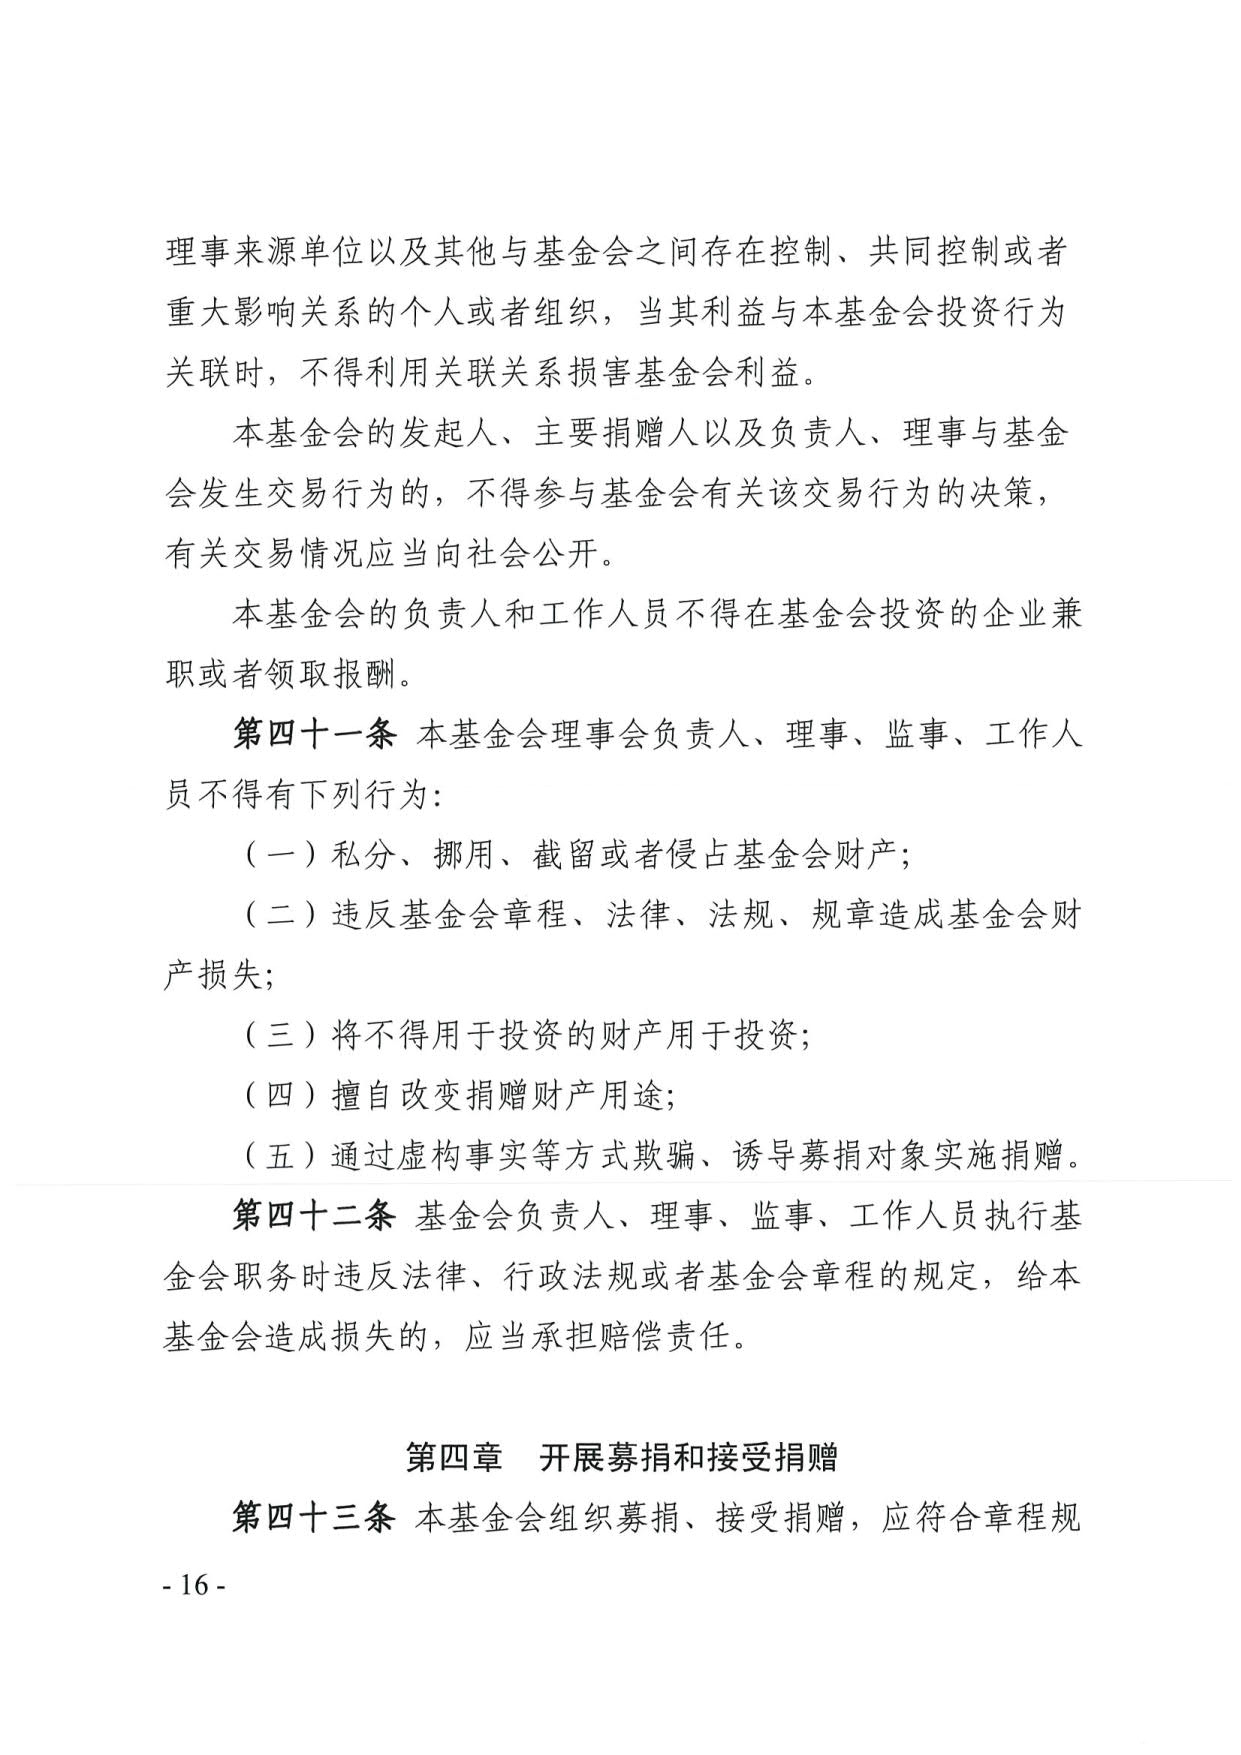 广东省民政厅关于印发《广东省基金会章程示范文本》的通知(4)_16.jpg